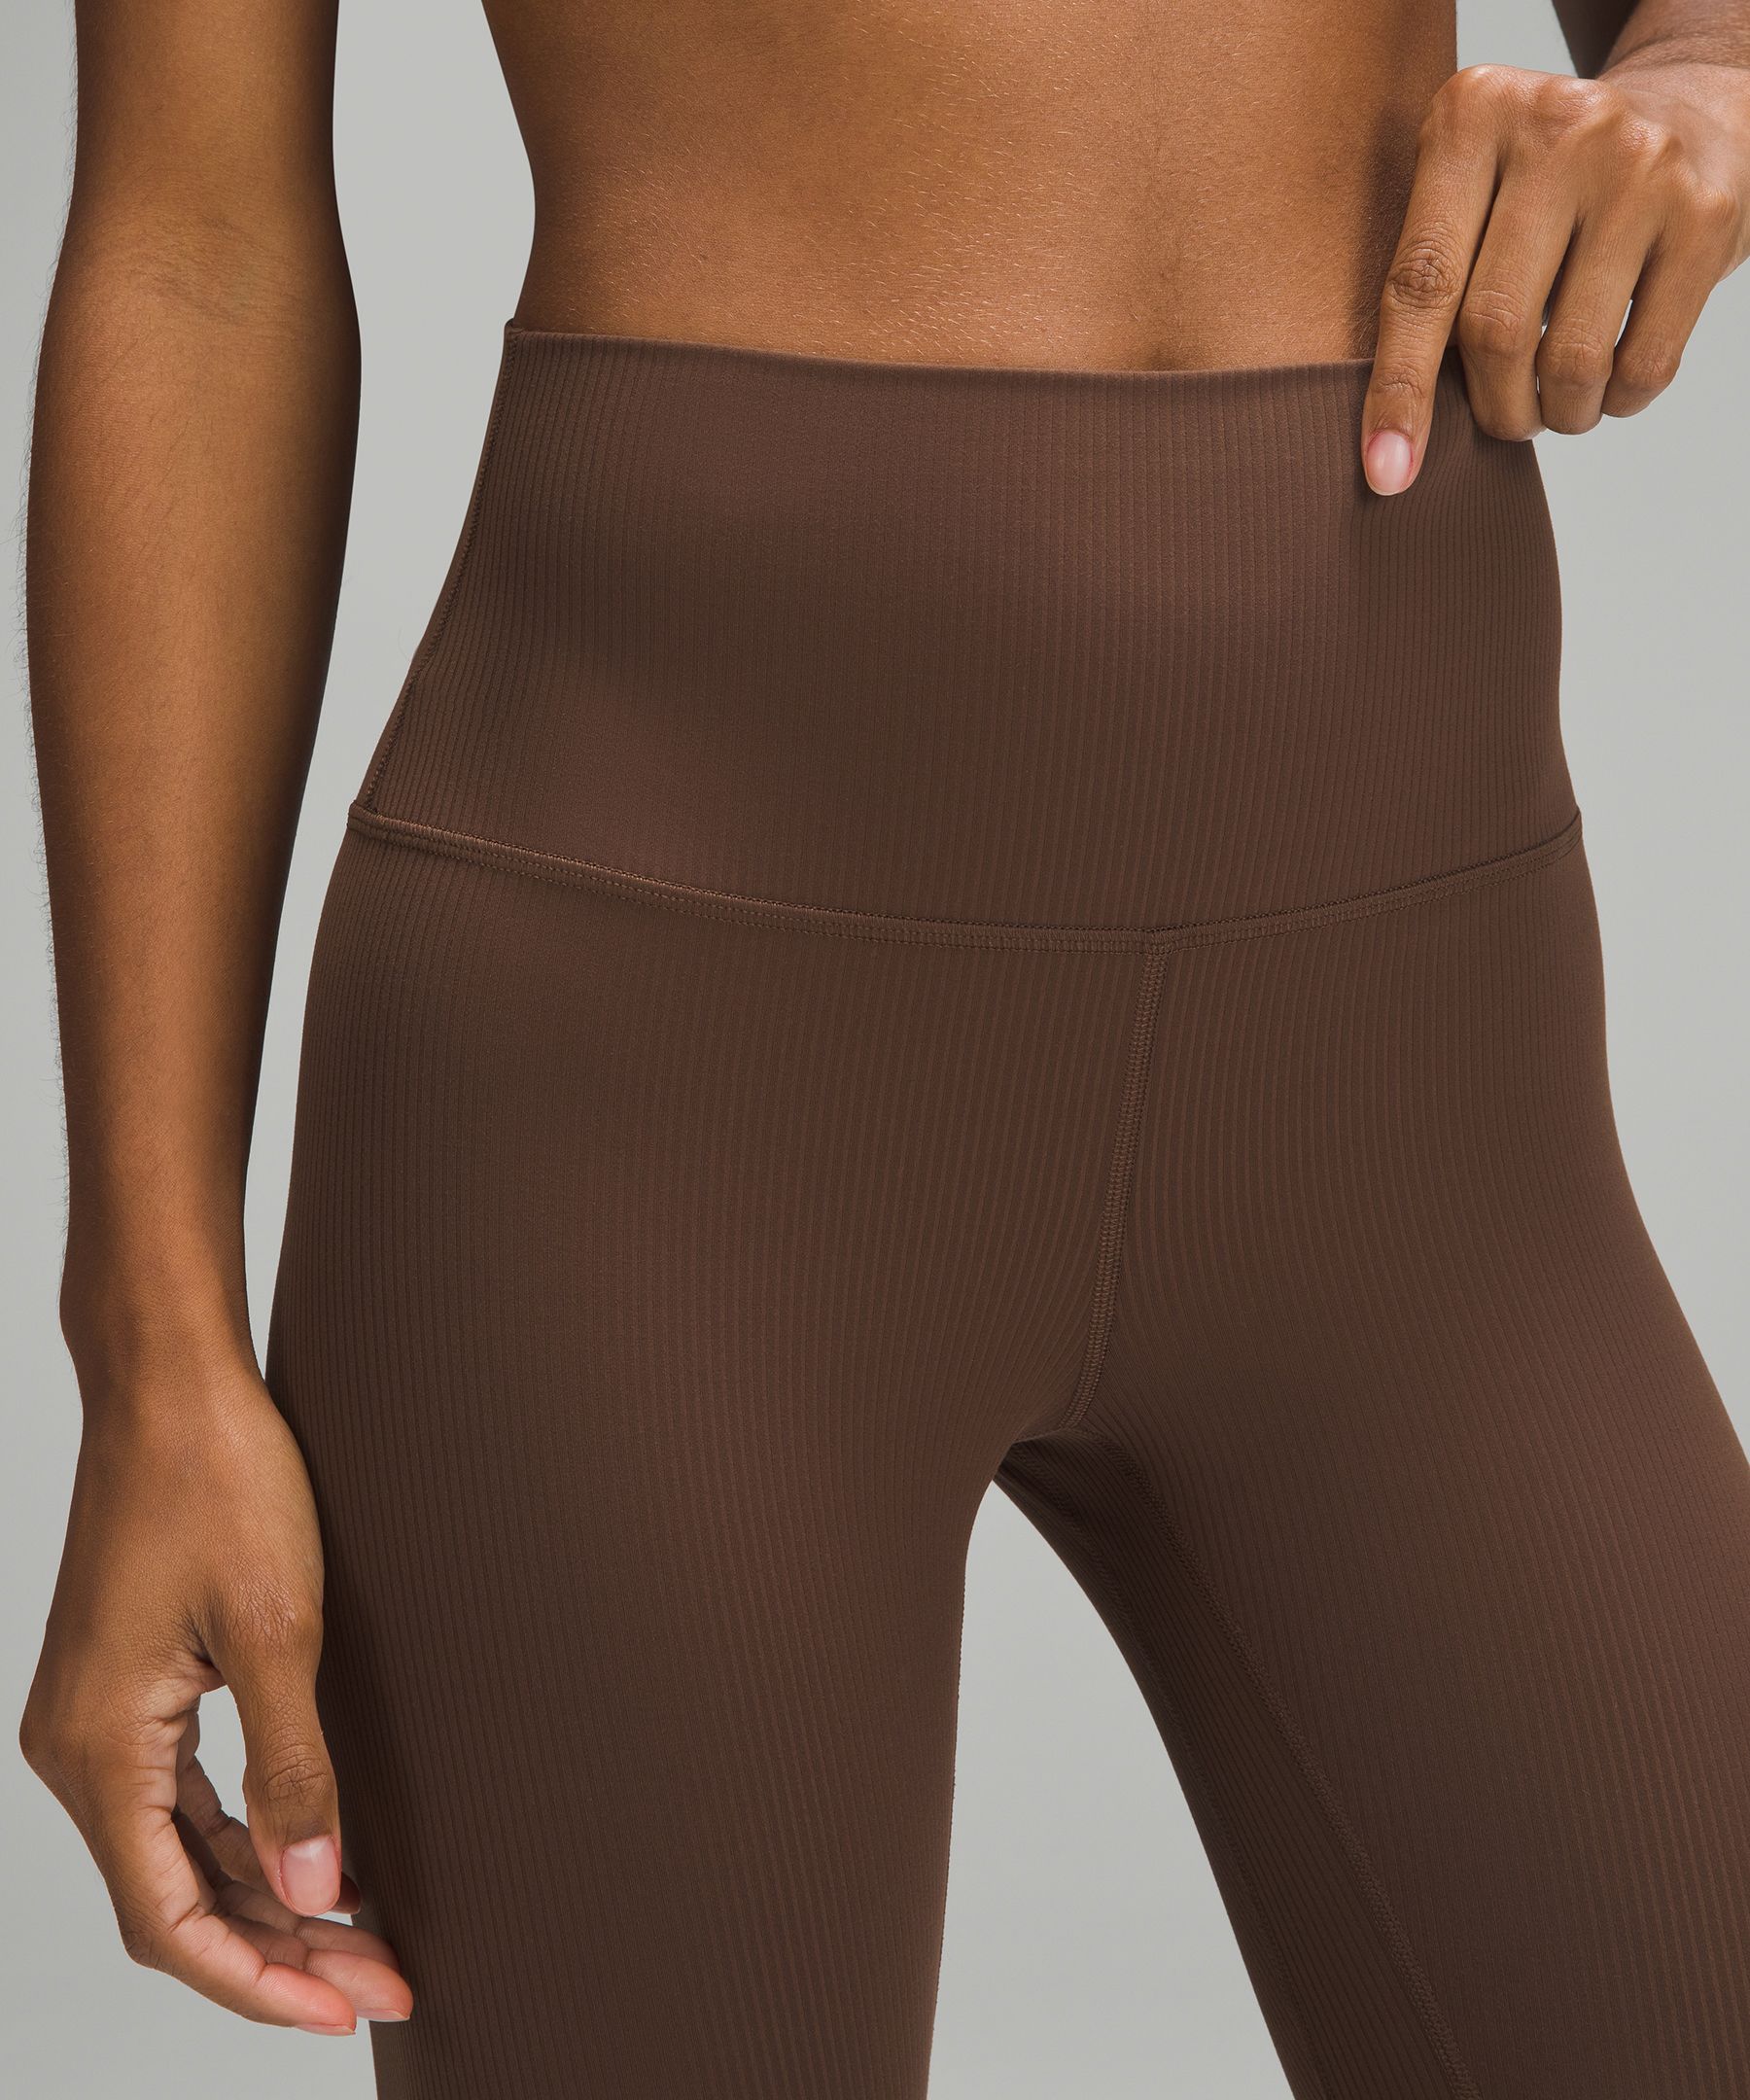 BNWT Lululemon 25” black align tights / leggings size 4, Women's